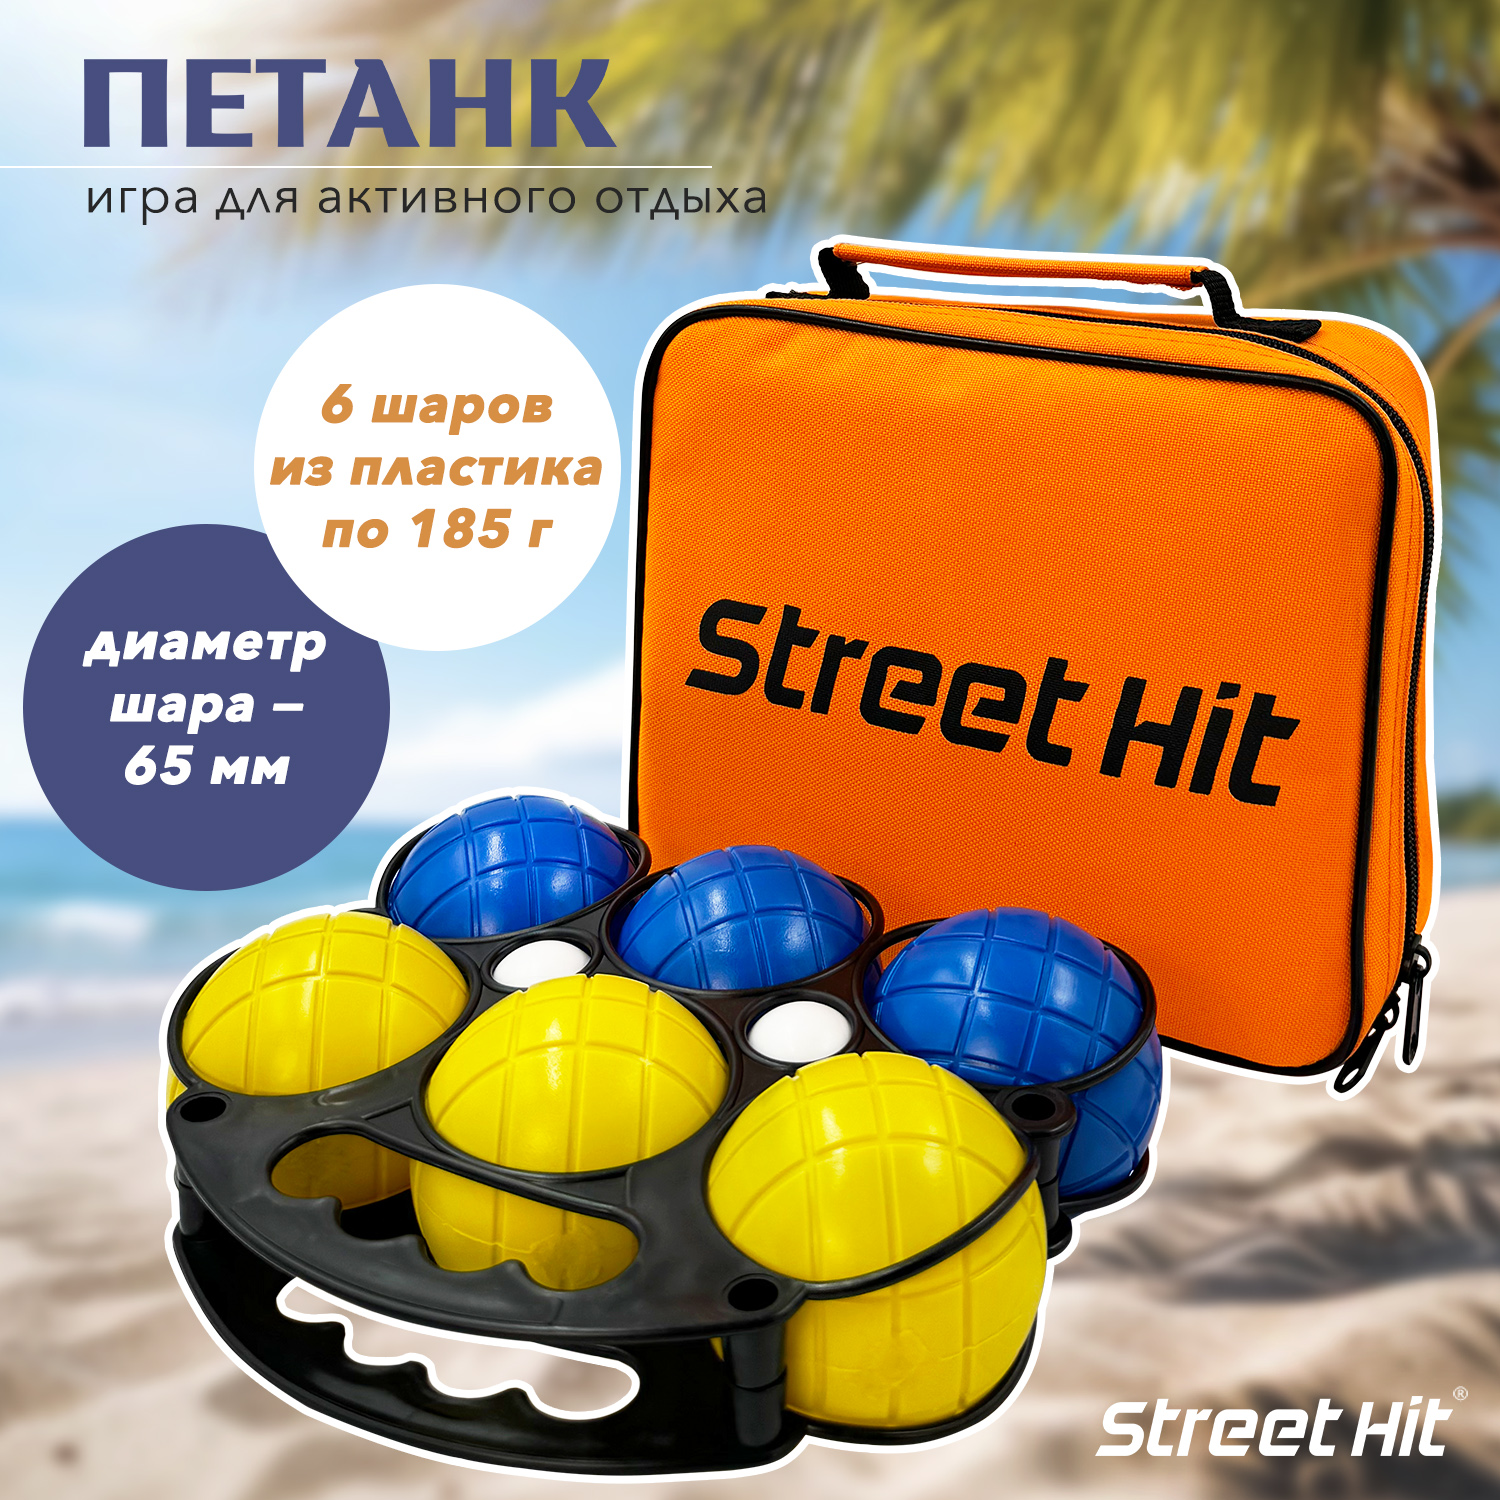 Набор для игры Street Hit Петанк, 6 шаров из пластика, синий+желтый